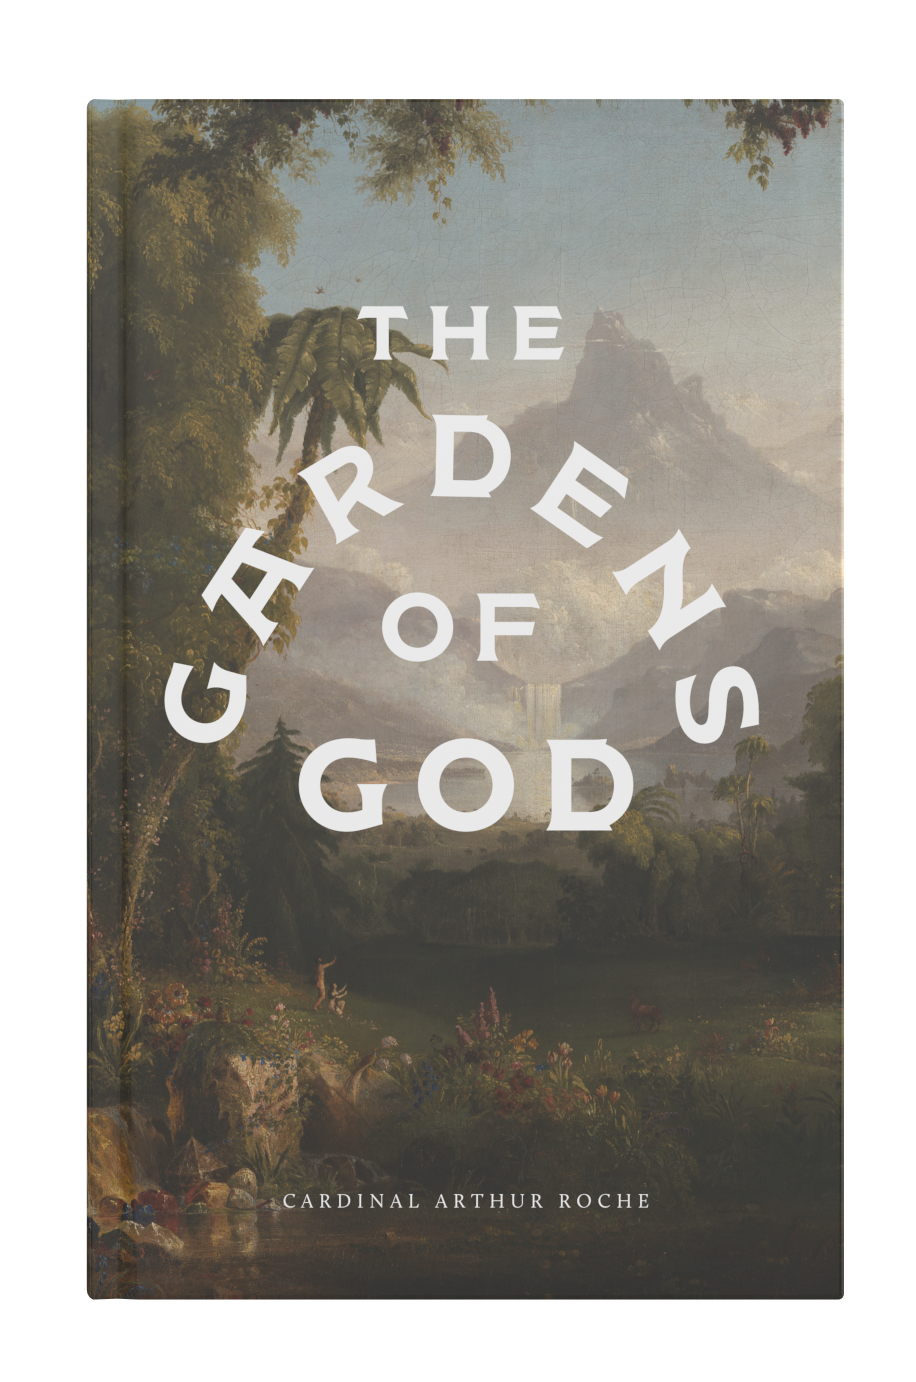 Gardens of God